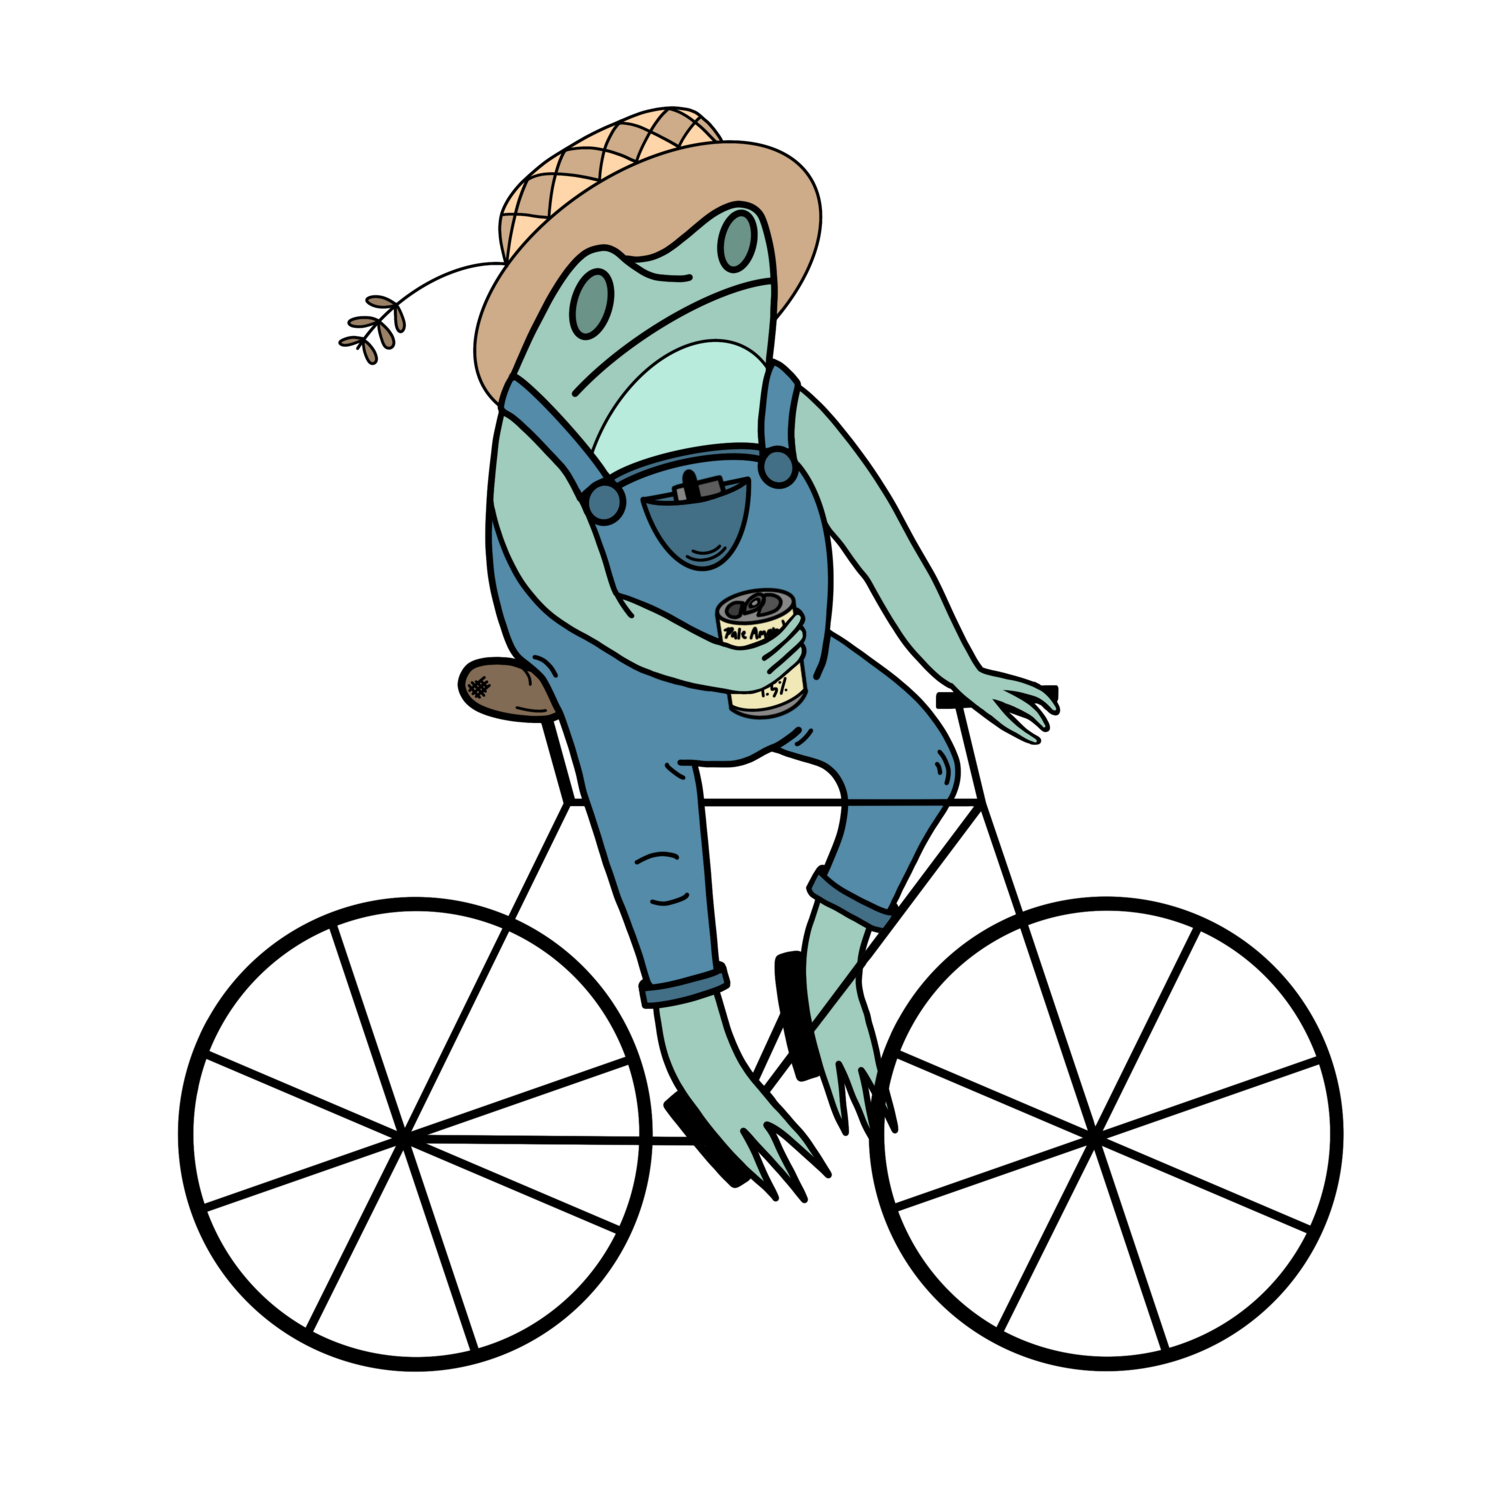 Bike. Beer. Frog.